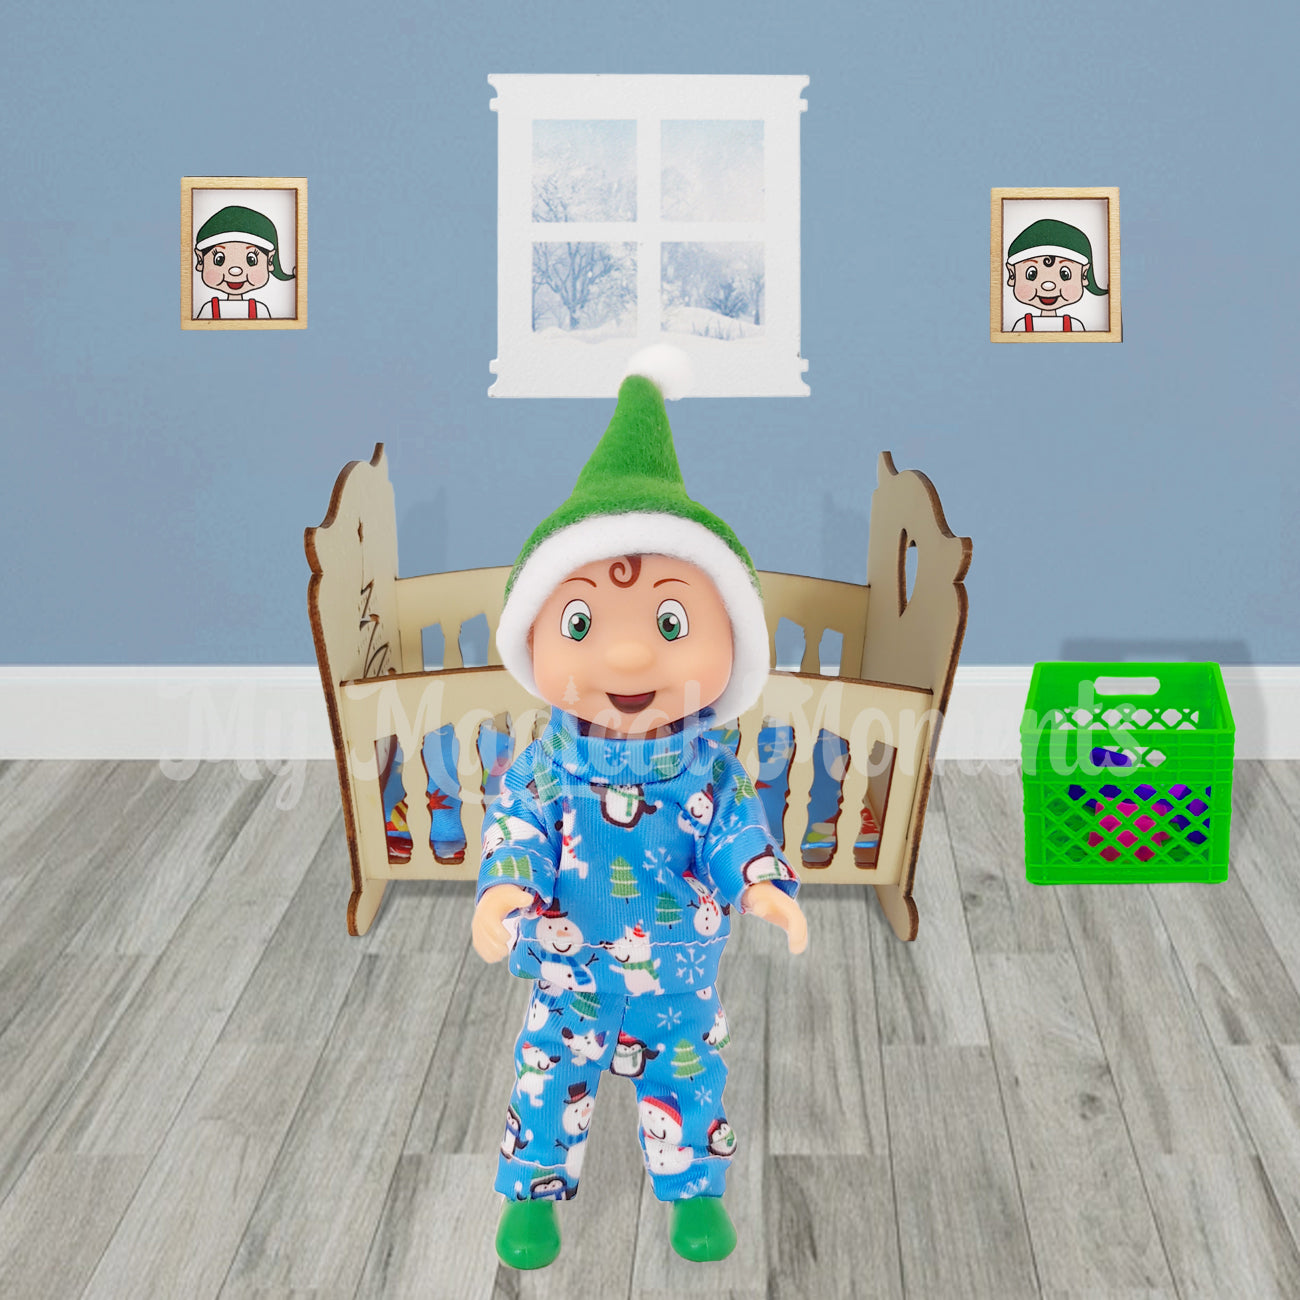 Elf toddler wearing blue snow pyjamas